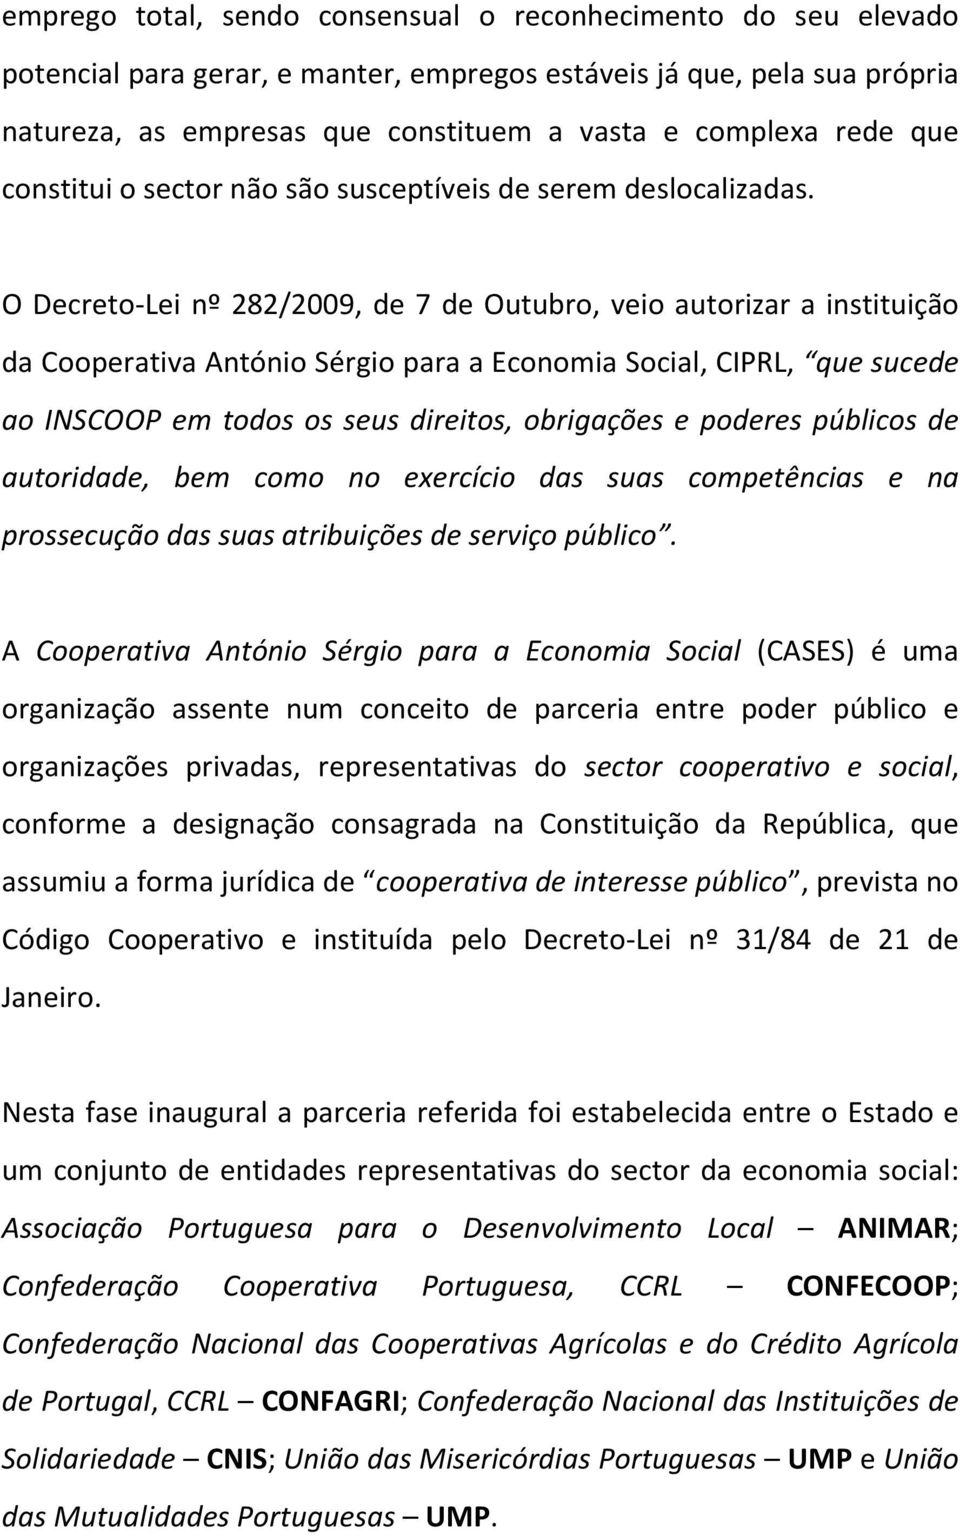 O Decreto-Lei nº 282/2009, de 7 de Outubro, veio autorizar a instituição da Cooperativa António Sérgio para a Economia Social, CIPRL, que sucede ao INSCOOP em todos os seus direitos, obrigações e